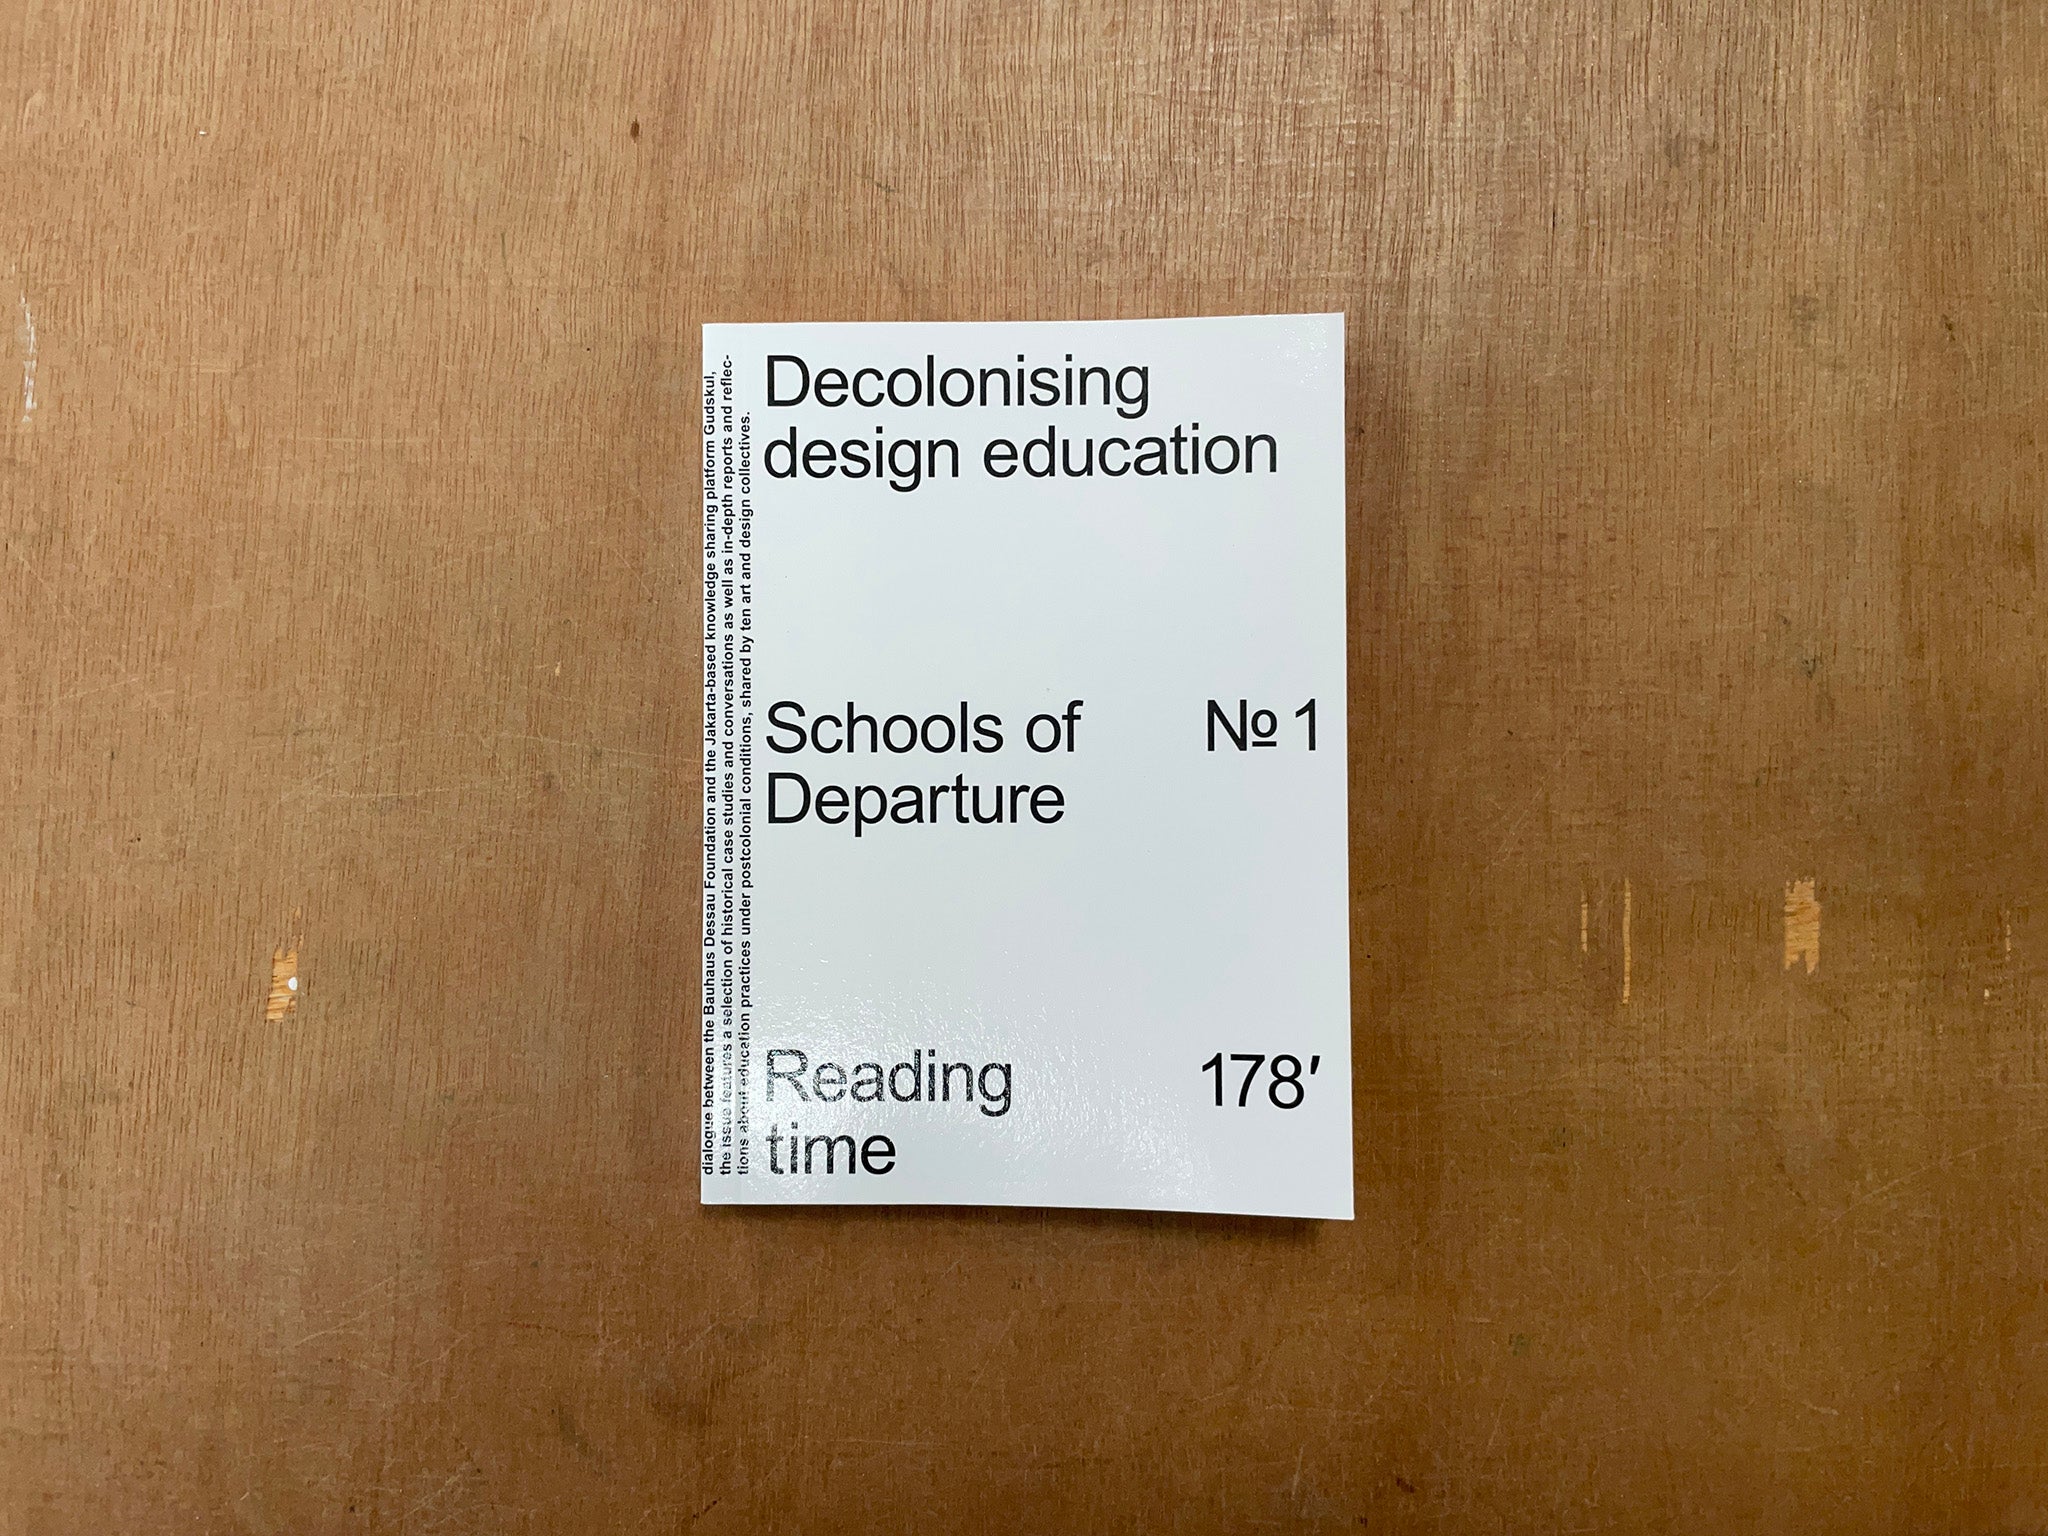 SCHOOLS OF DEPARTURE NO. 1: DECOLONISING DESIGN EDUCATION